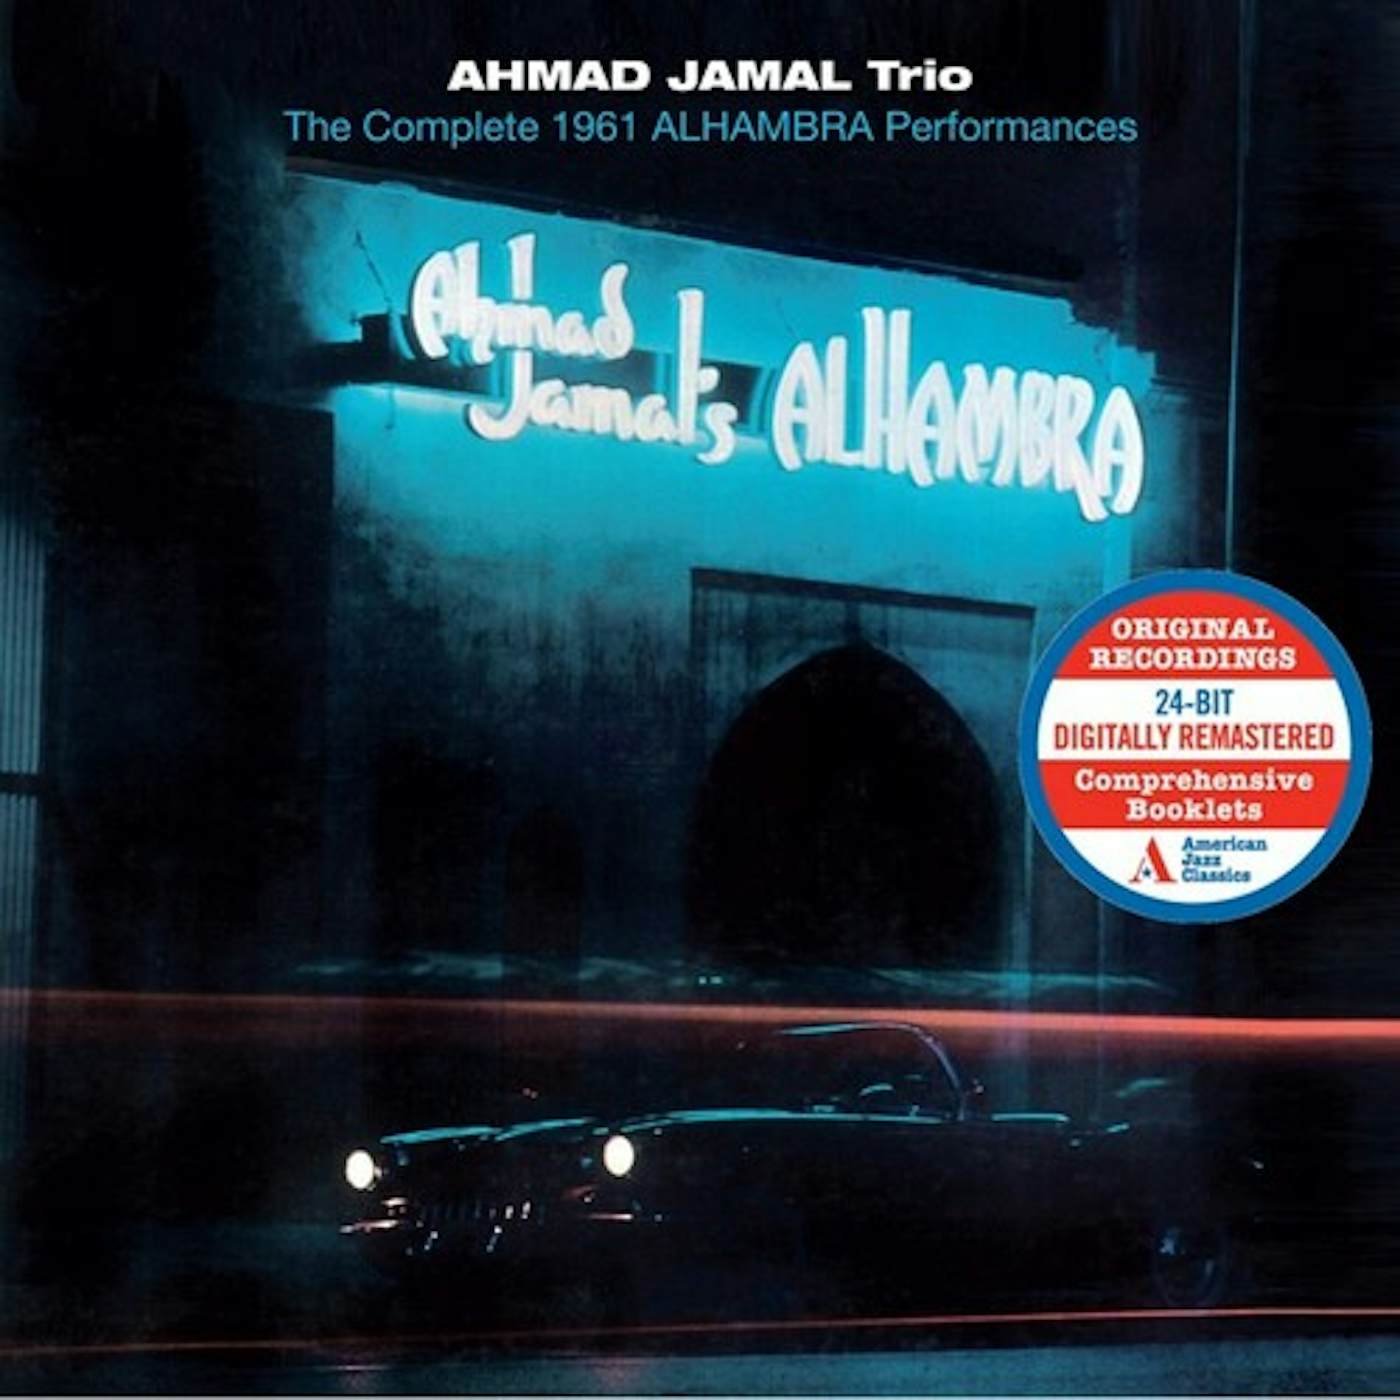 Ahmad Jamal COMPLETE 1961 ALHAMBRA PERFORMANCES CD